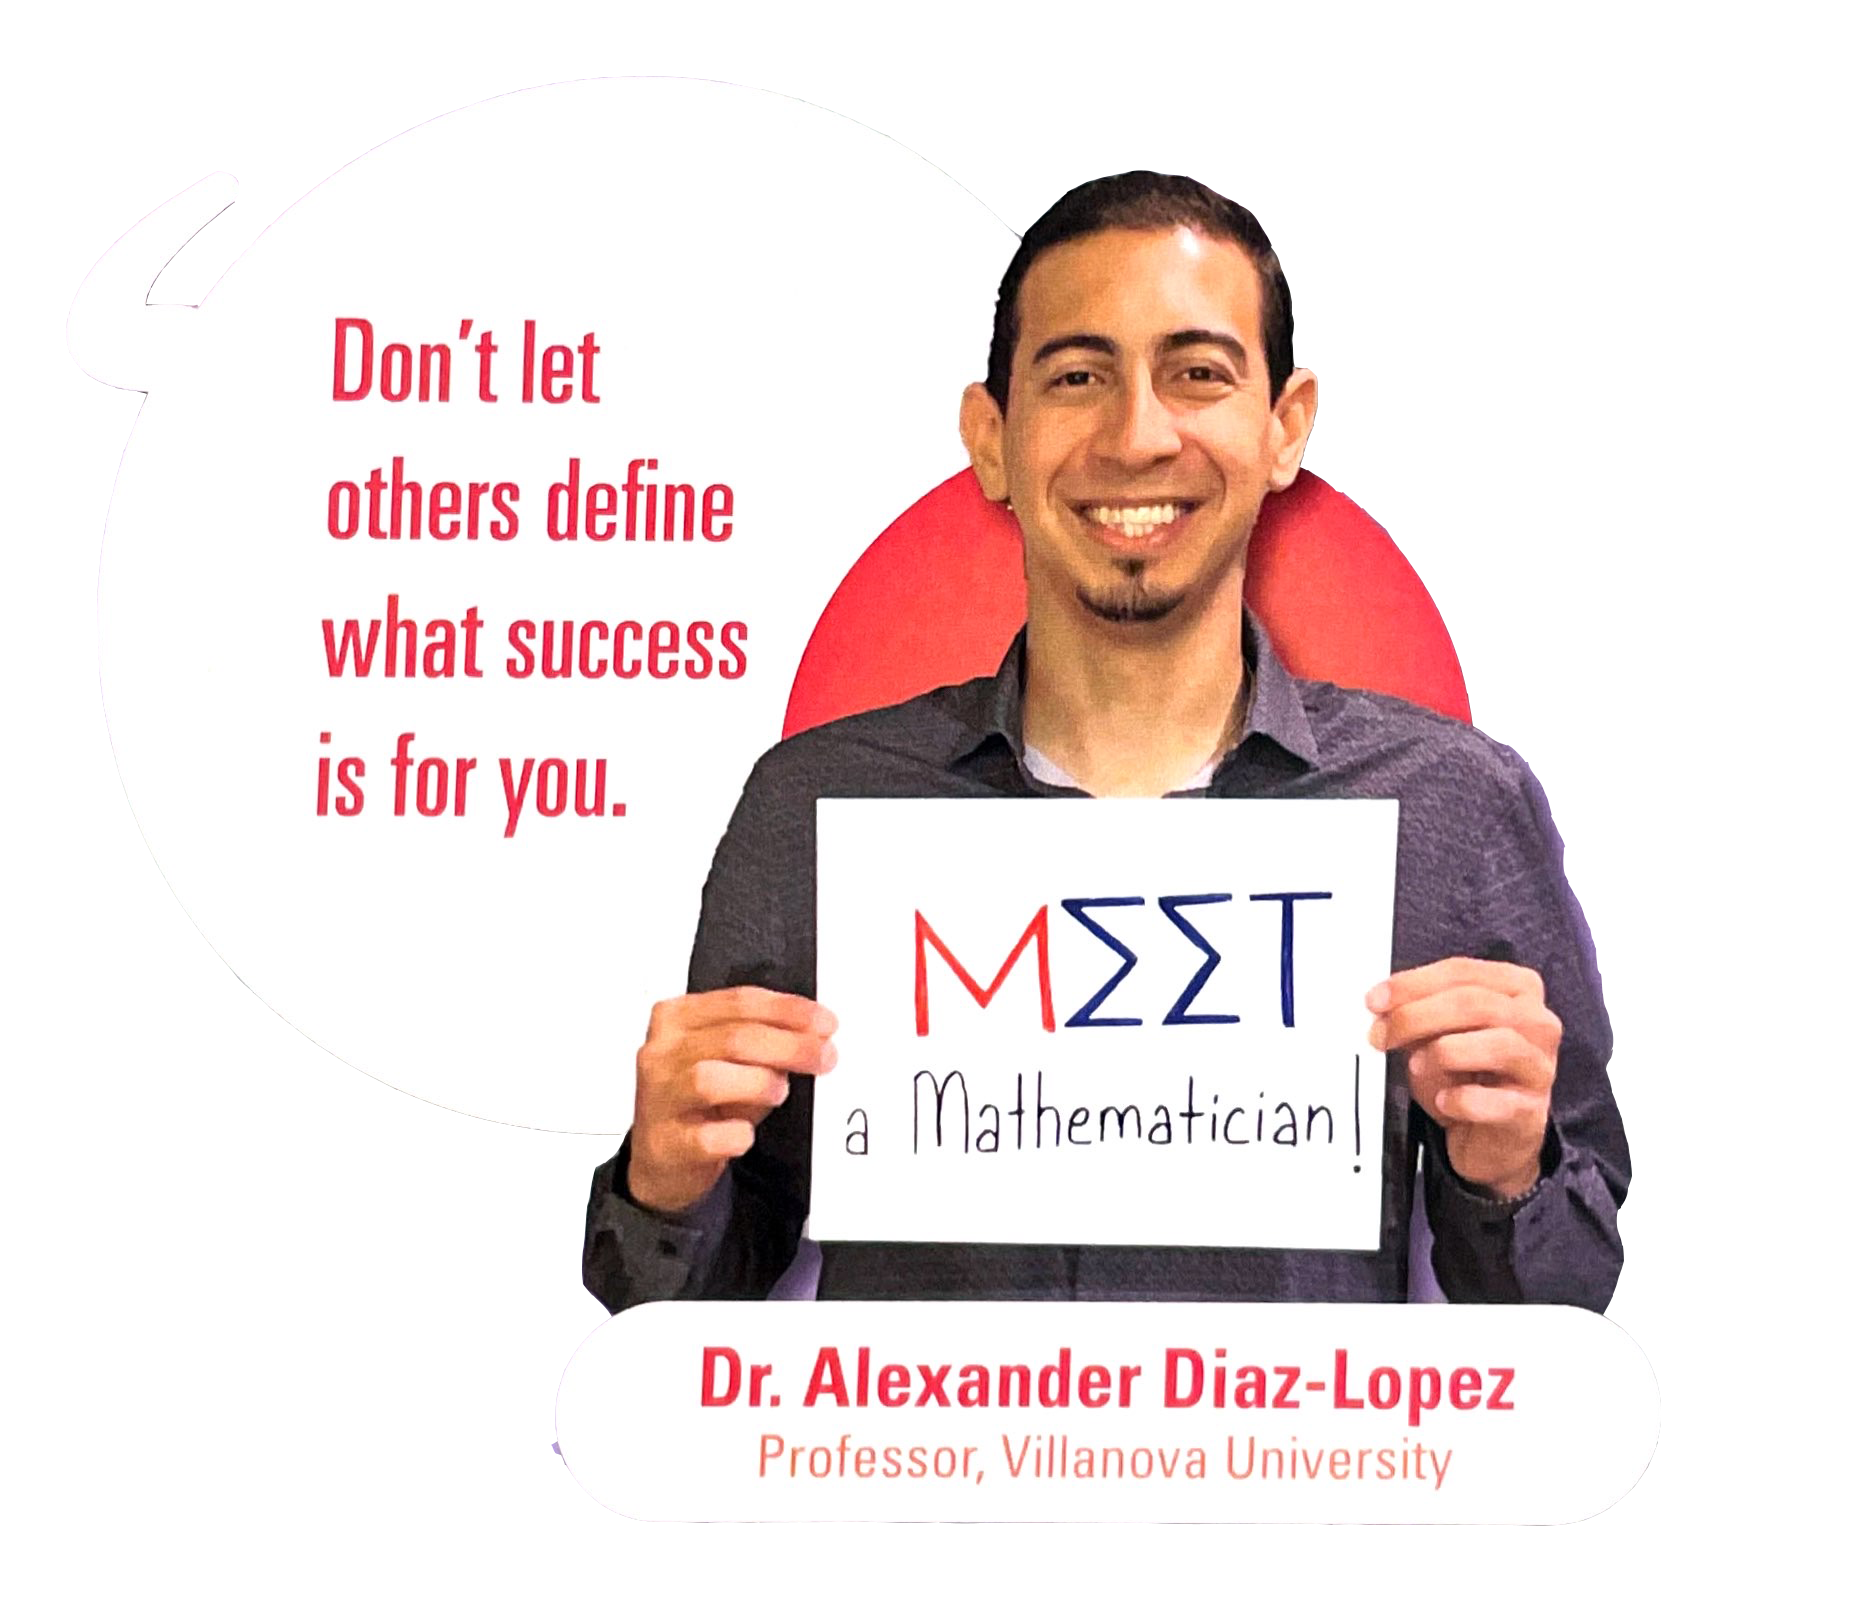 Spotlight: Meet a Mathematician - Dr. Alexander Diaz-Lopez, Professor, Villanova University. "Don't let others define what success is for you."